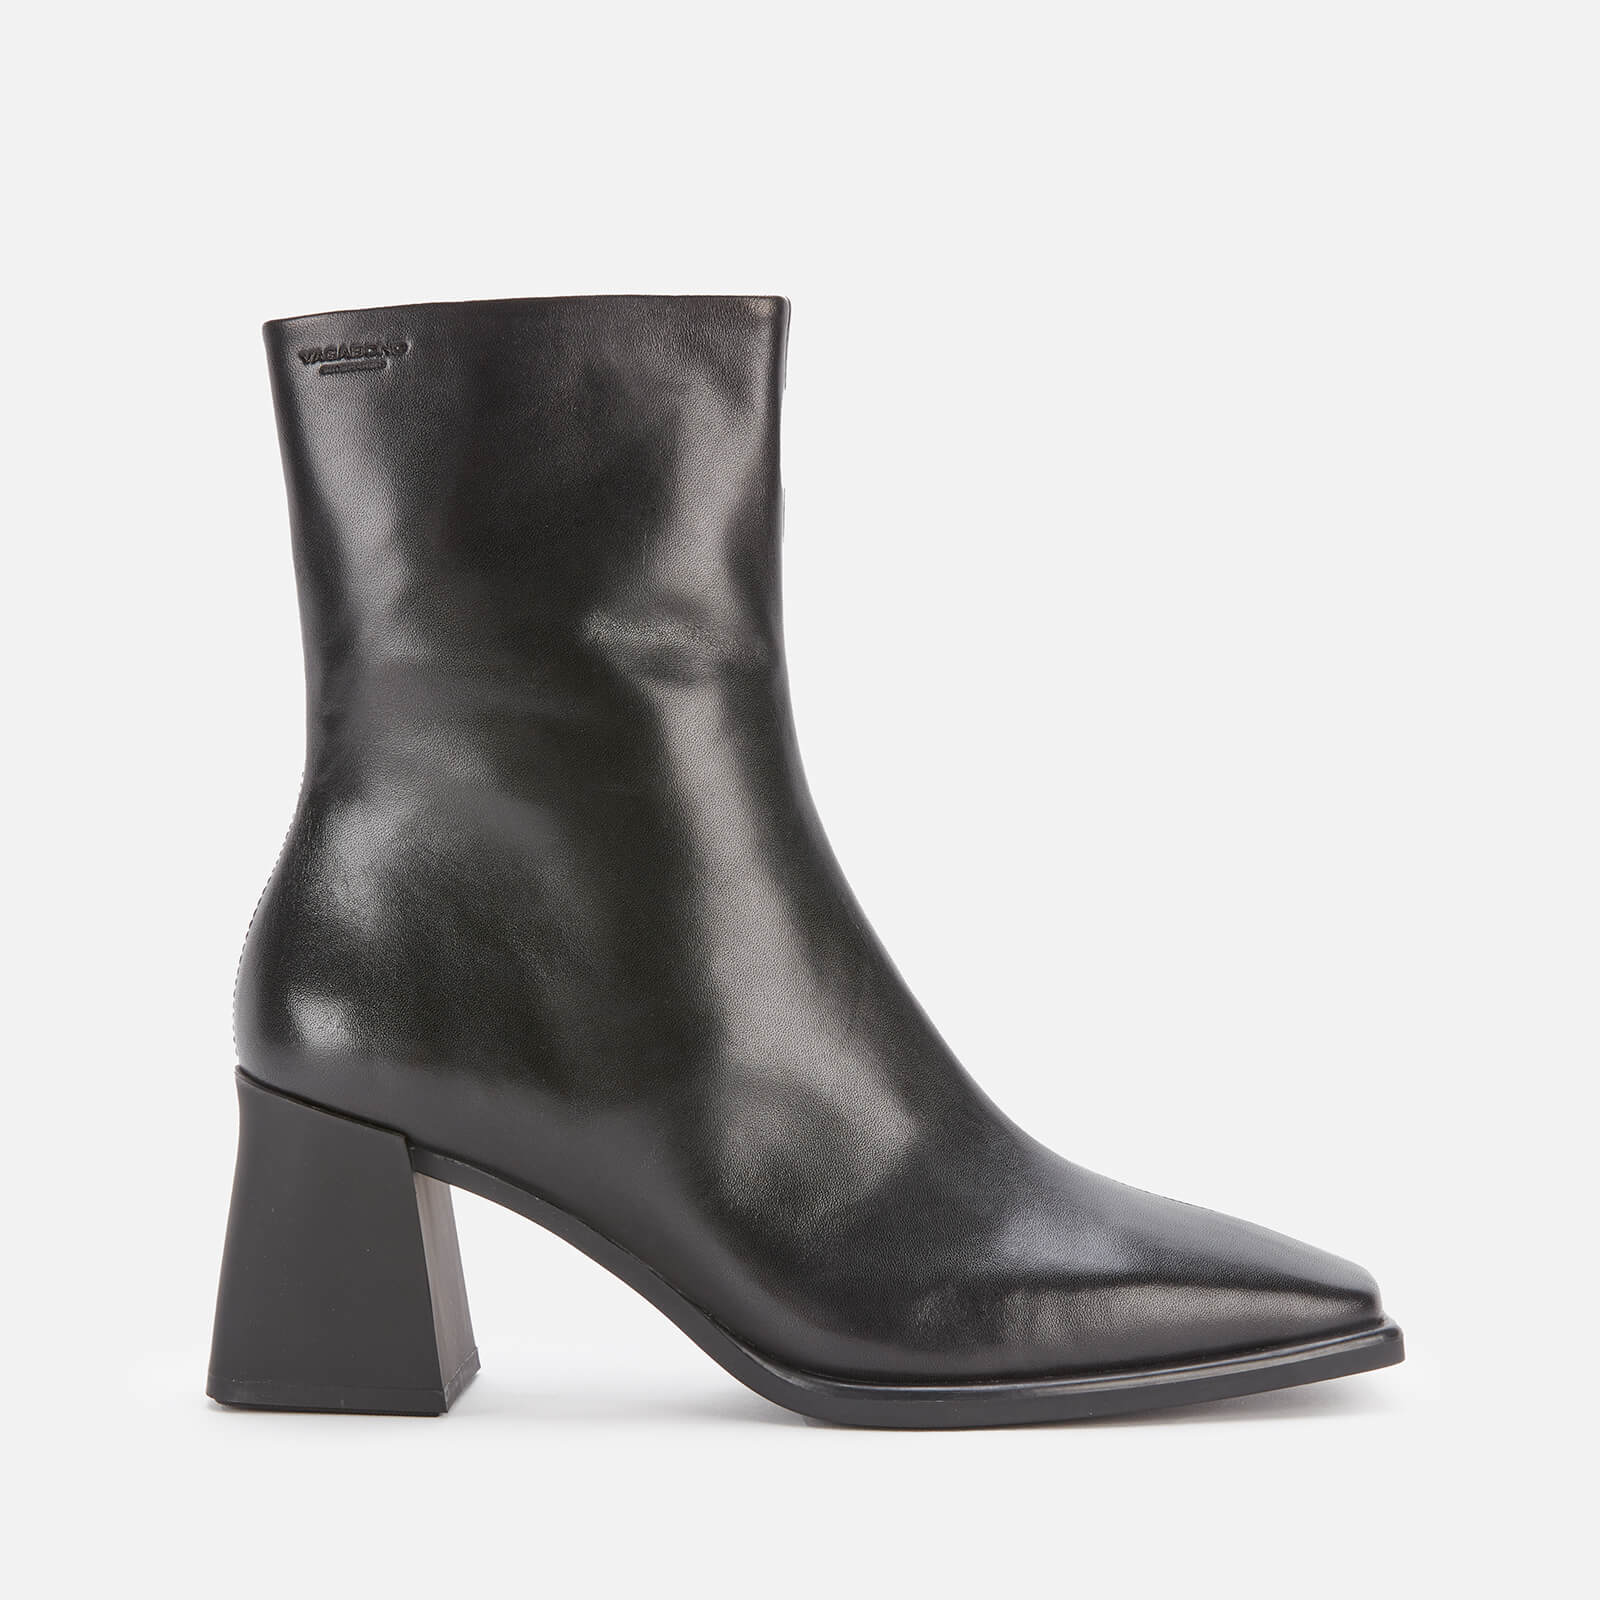 Vagabond Women's Hedda Leather Heeled Boots - Black - UK 3 von Vagabond